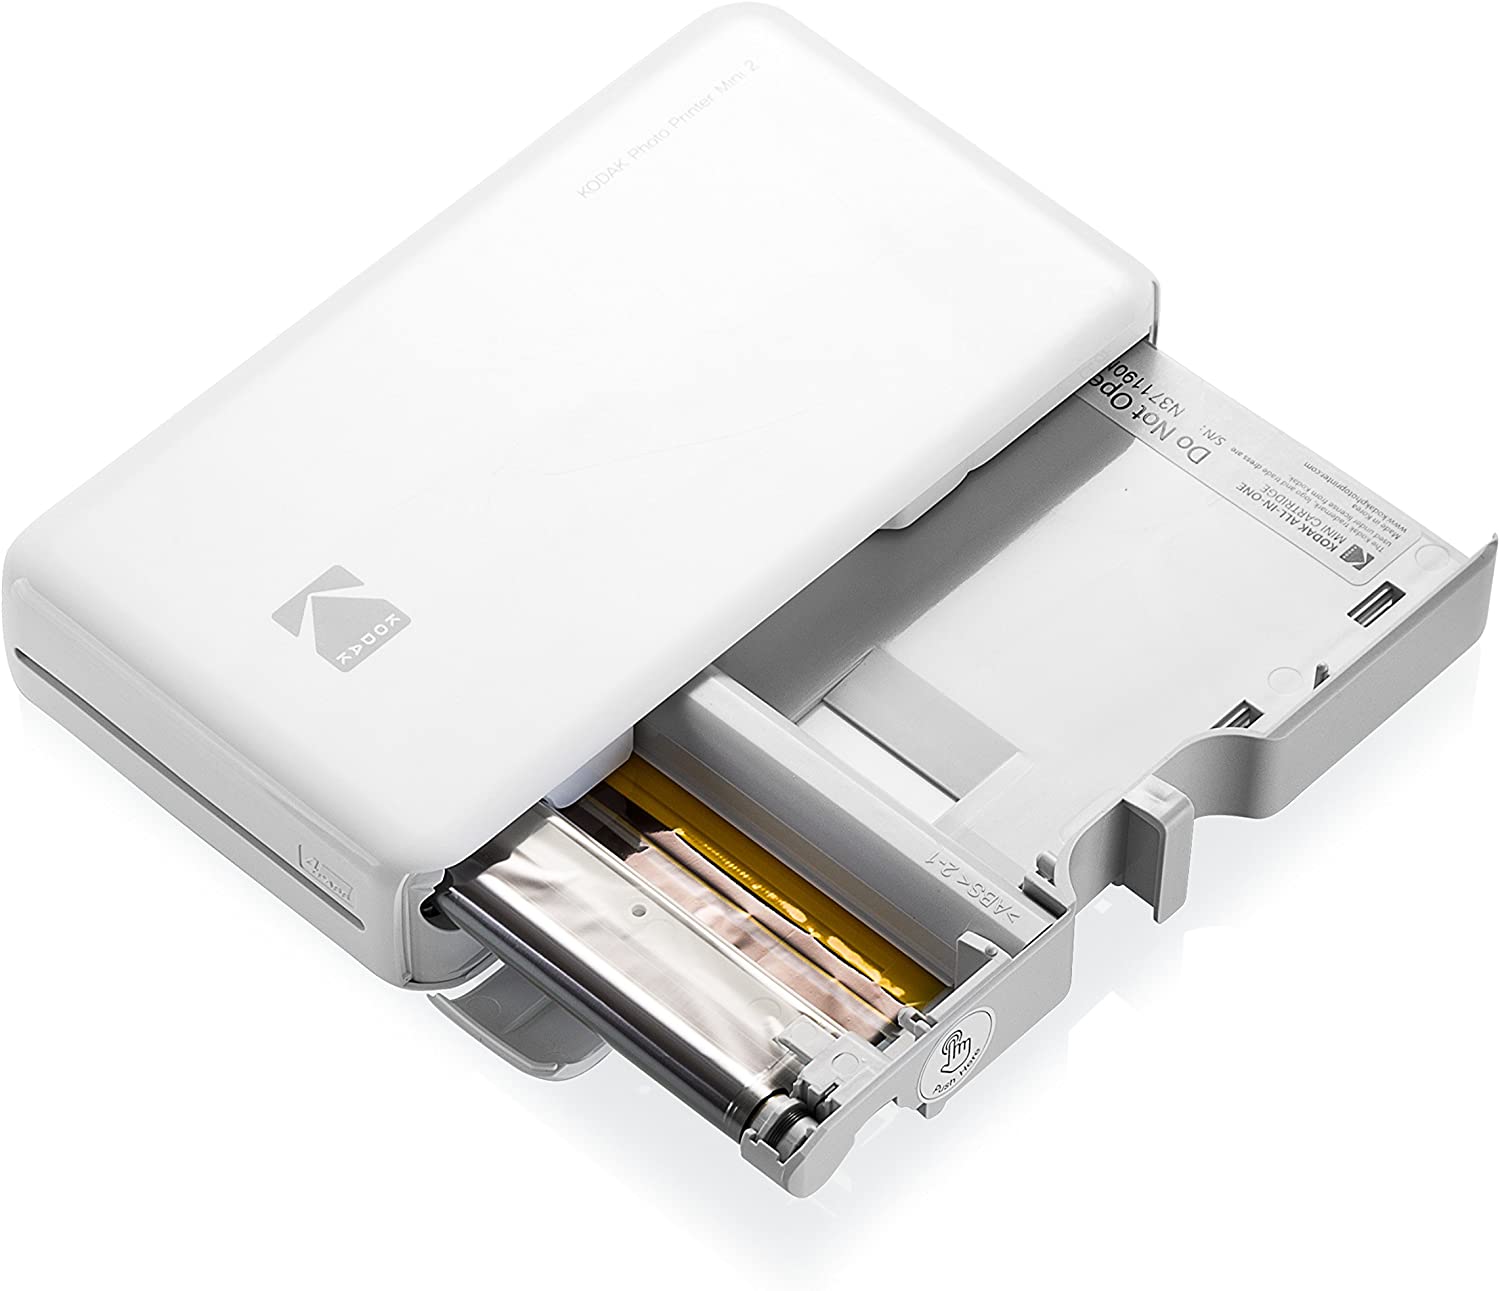 Lila Echte Tinte in Einem Instant - Kompatibel mit iOS & Android Geräte Kodak Mini 2 HD Wireless Mobile Instant Fotodrucker w / 4 Pass patentierte Drucktechnologie 